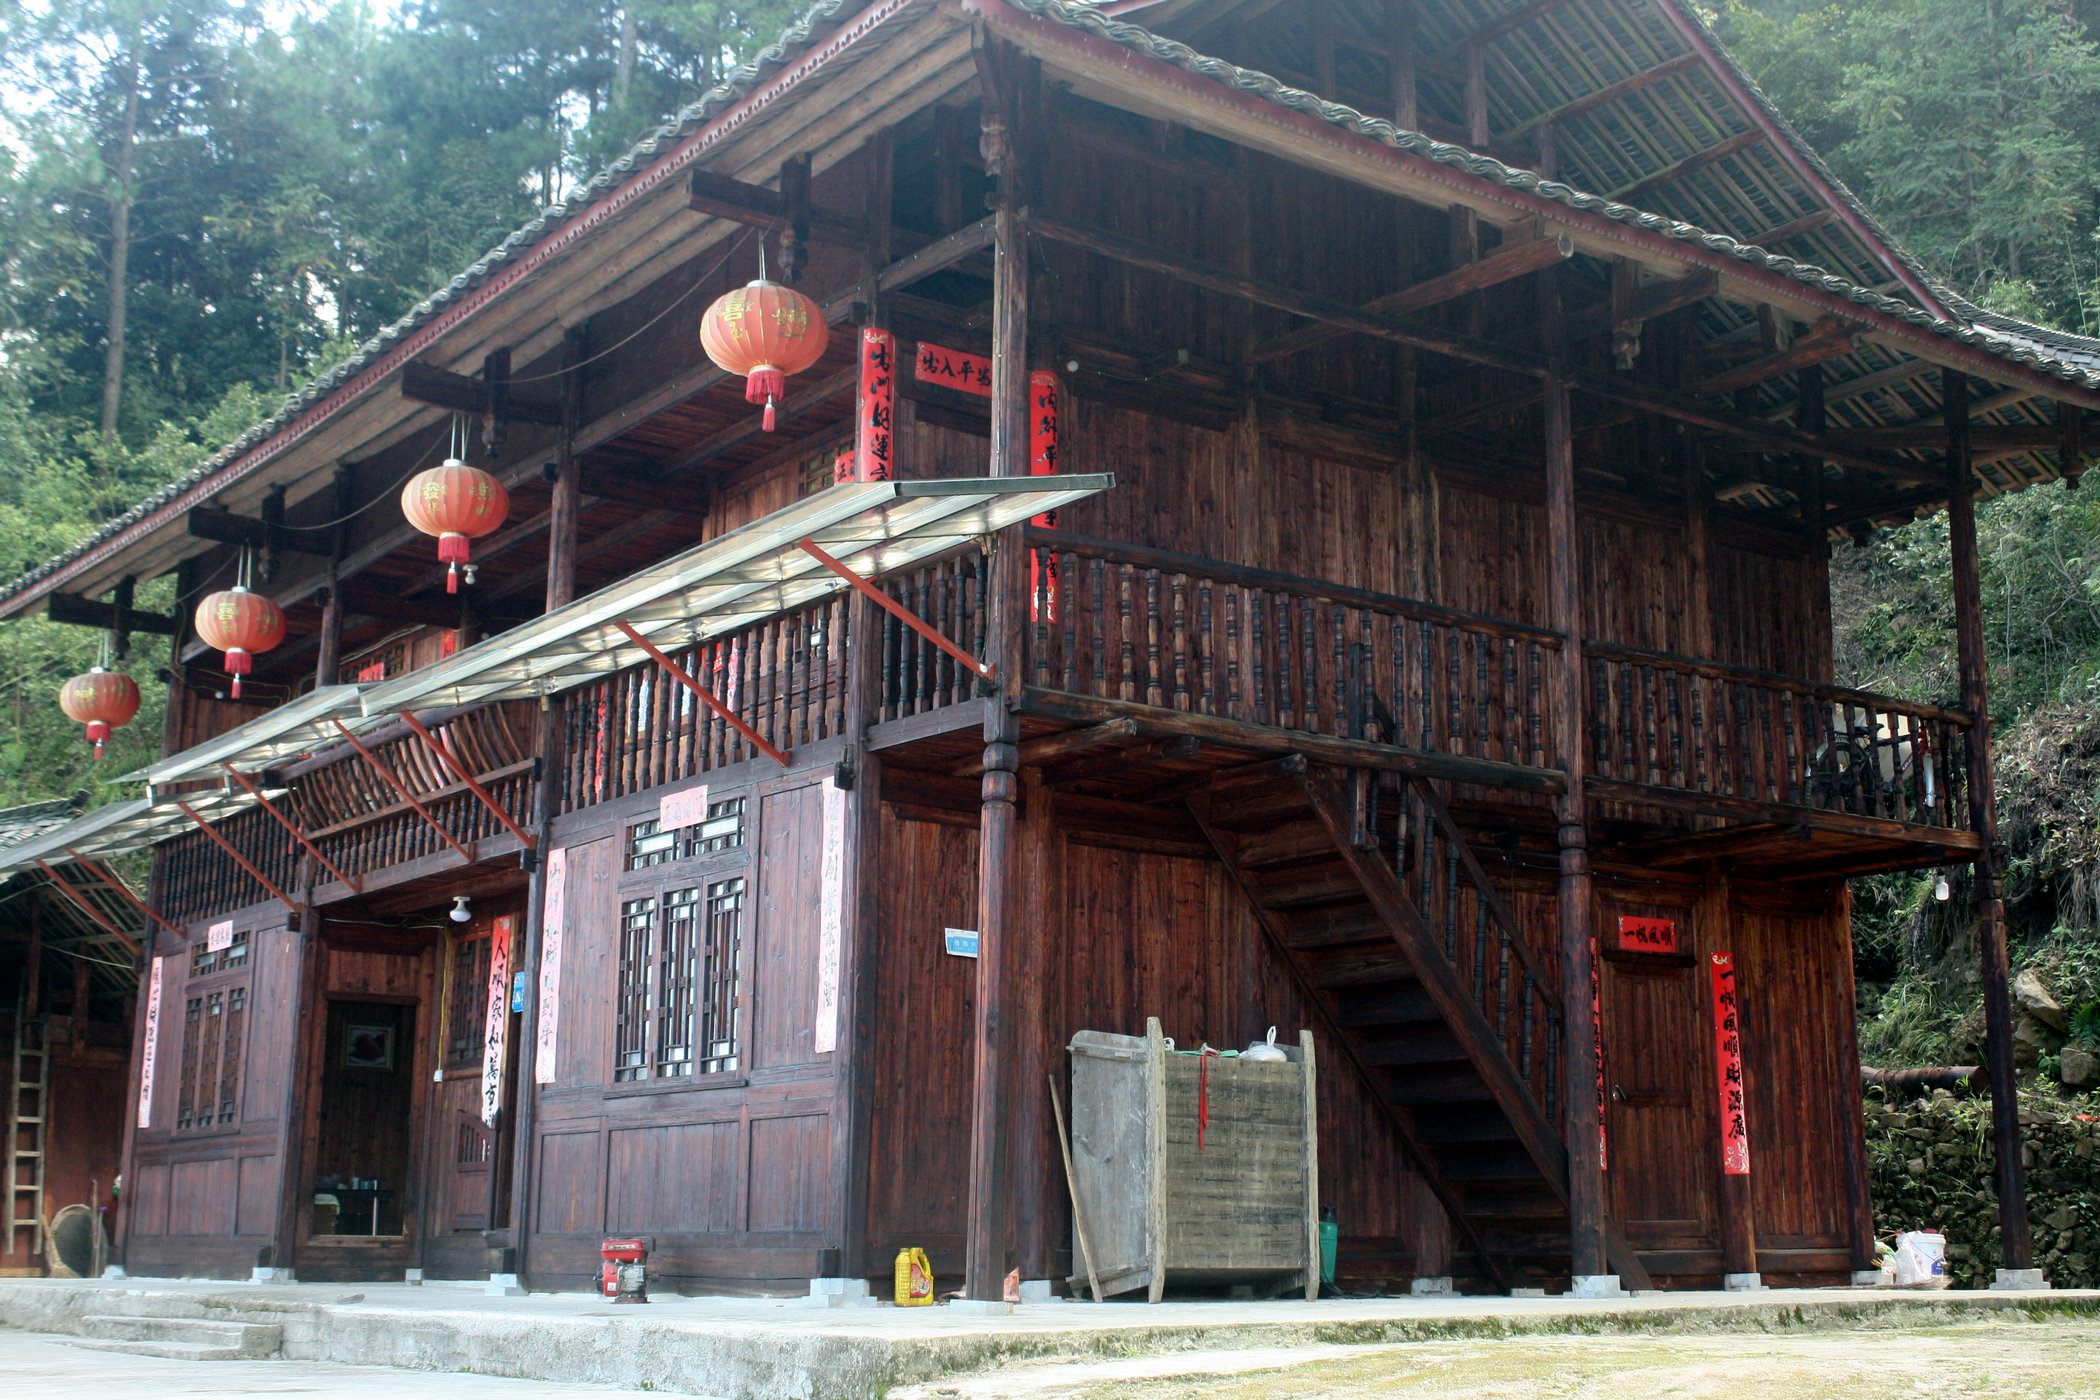 贵州木房子图片农村图片